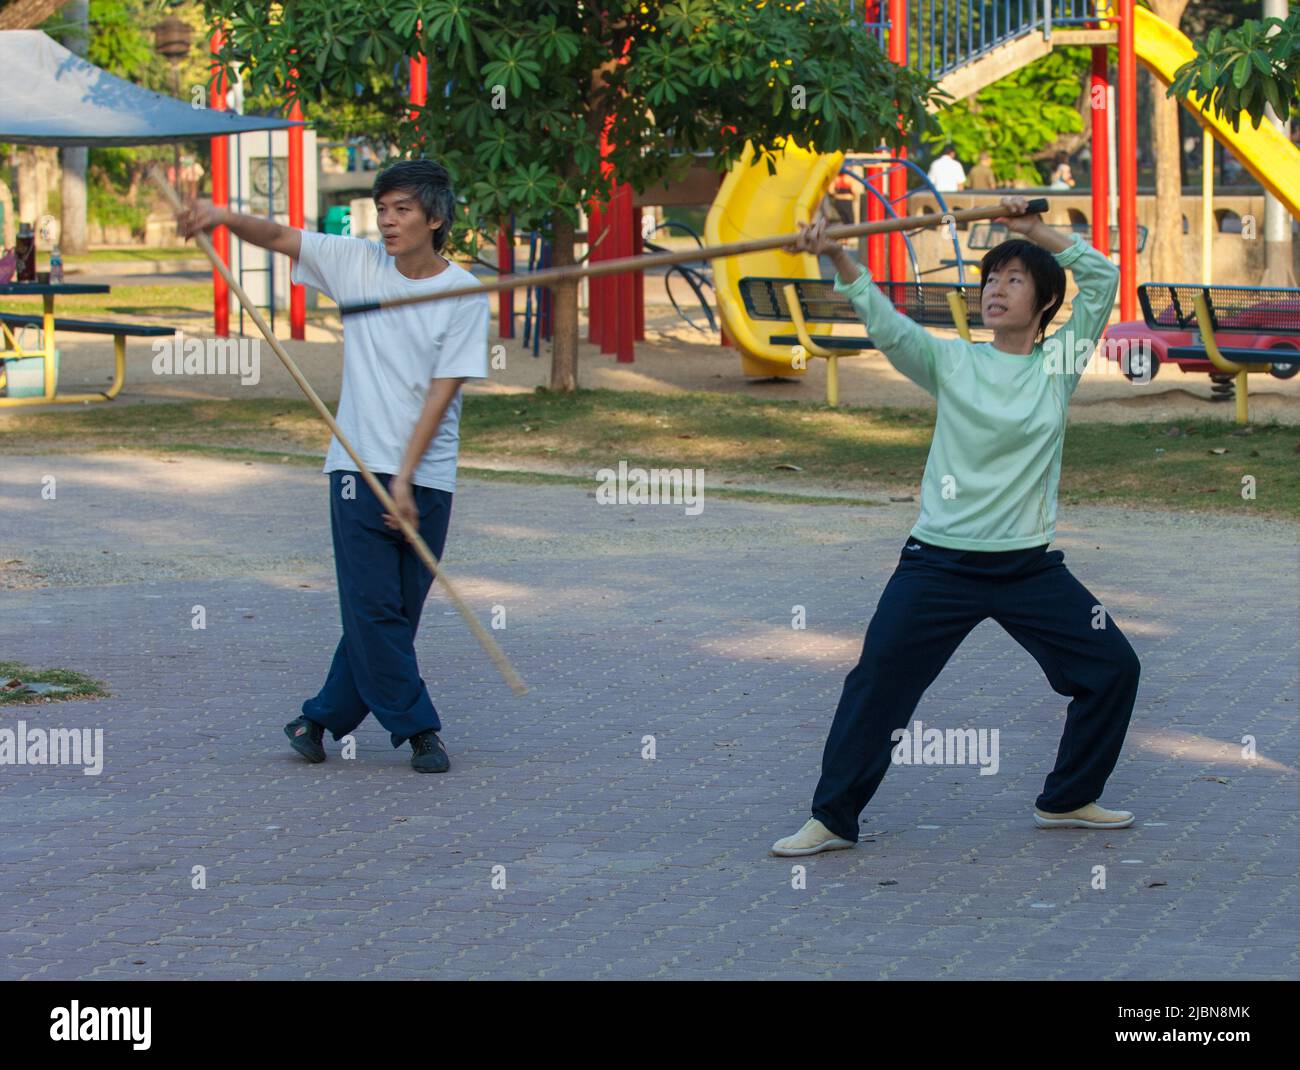 Exercice matinal de Tai Chi avec un bâton de bois dans le parc Lumpini Bangkok Thaïlande Banque D'Images